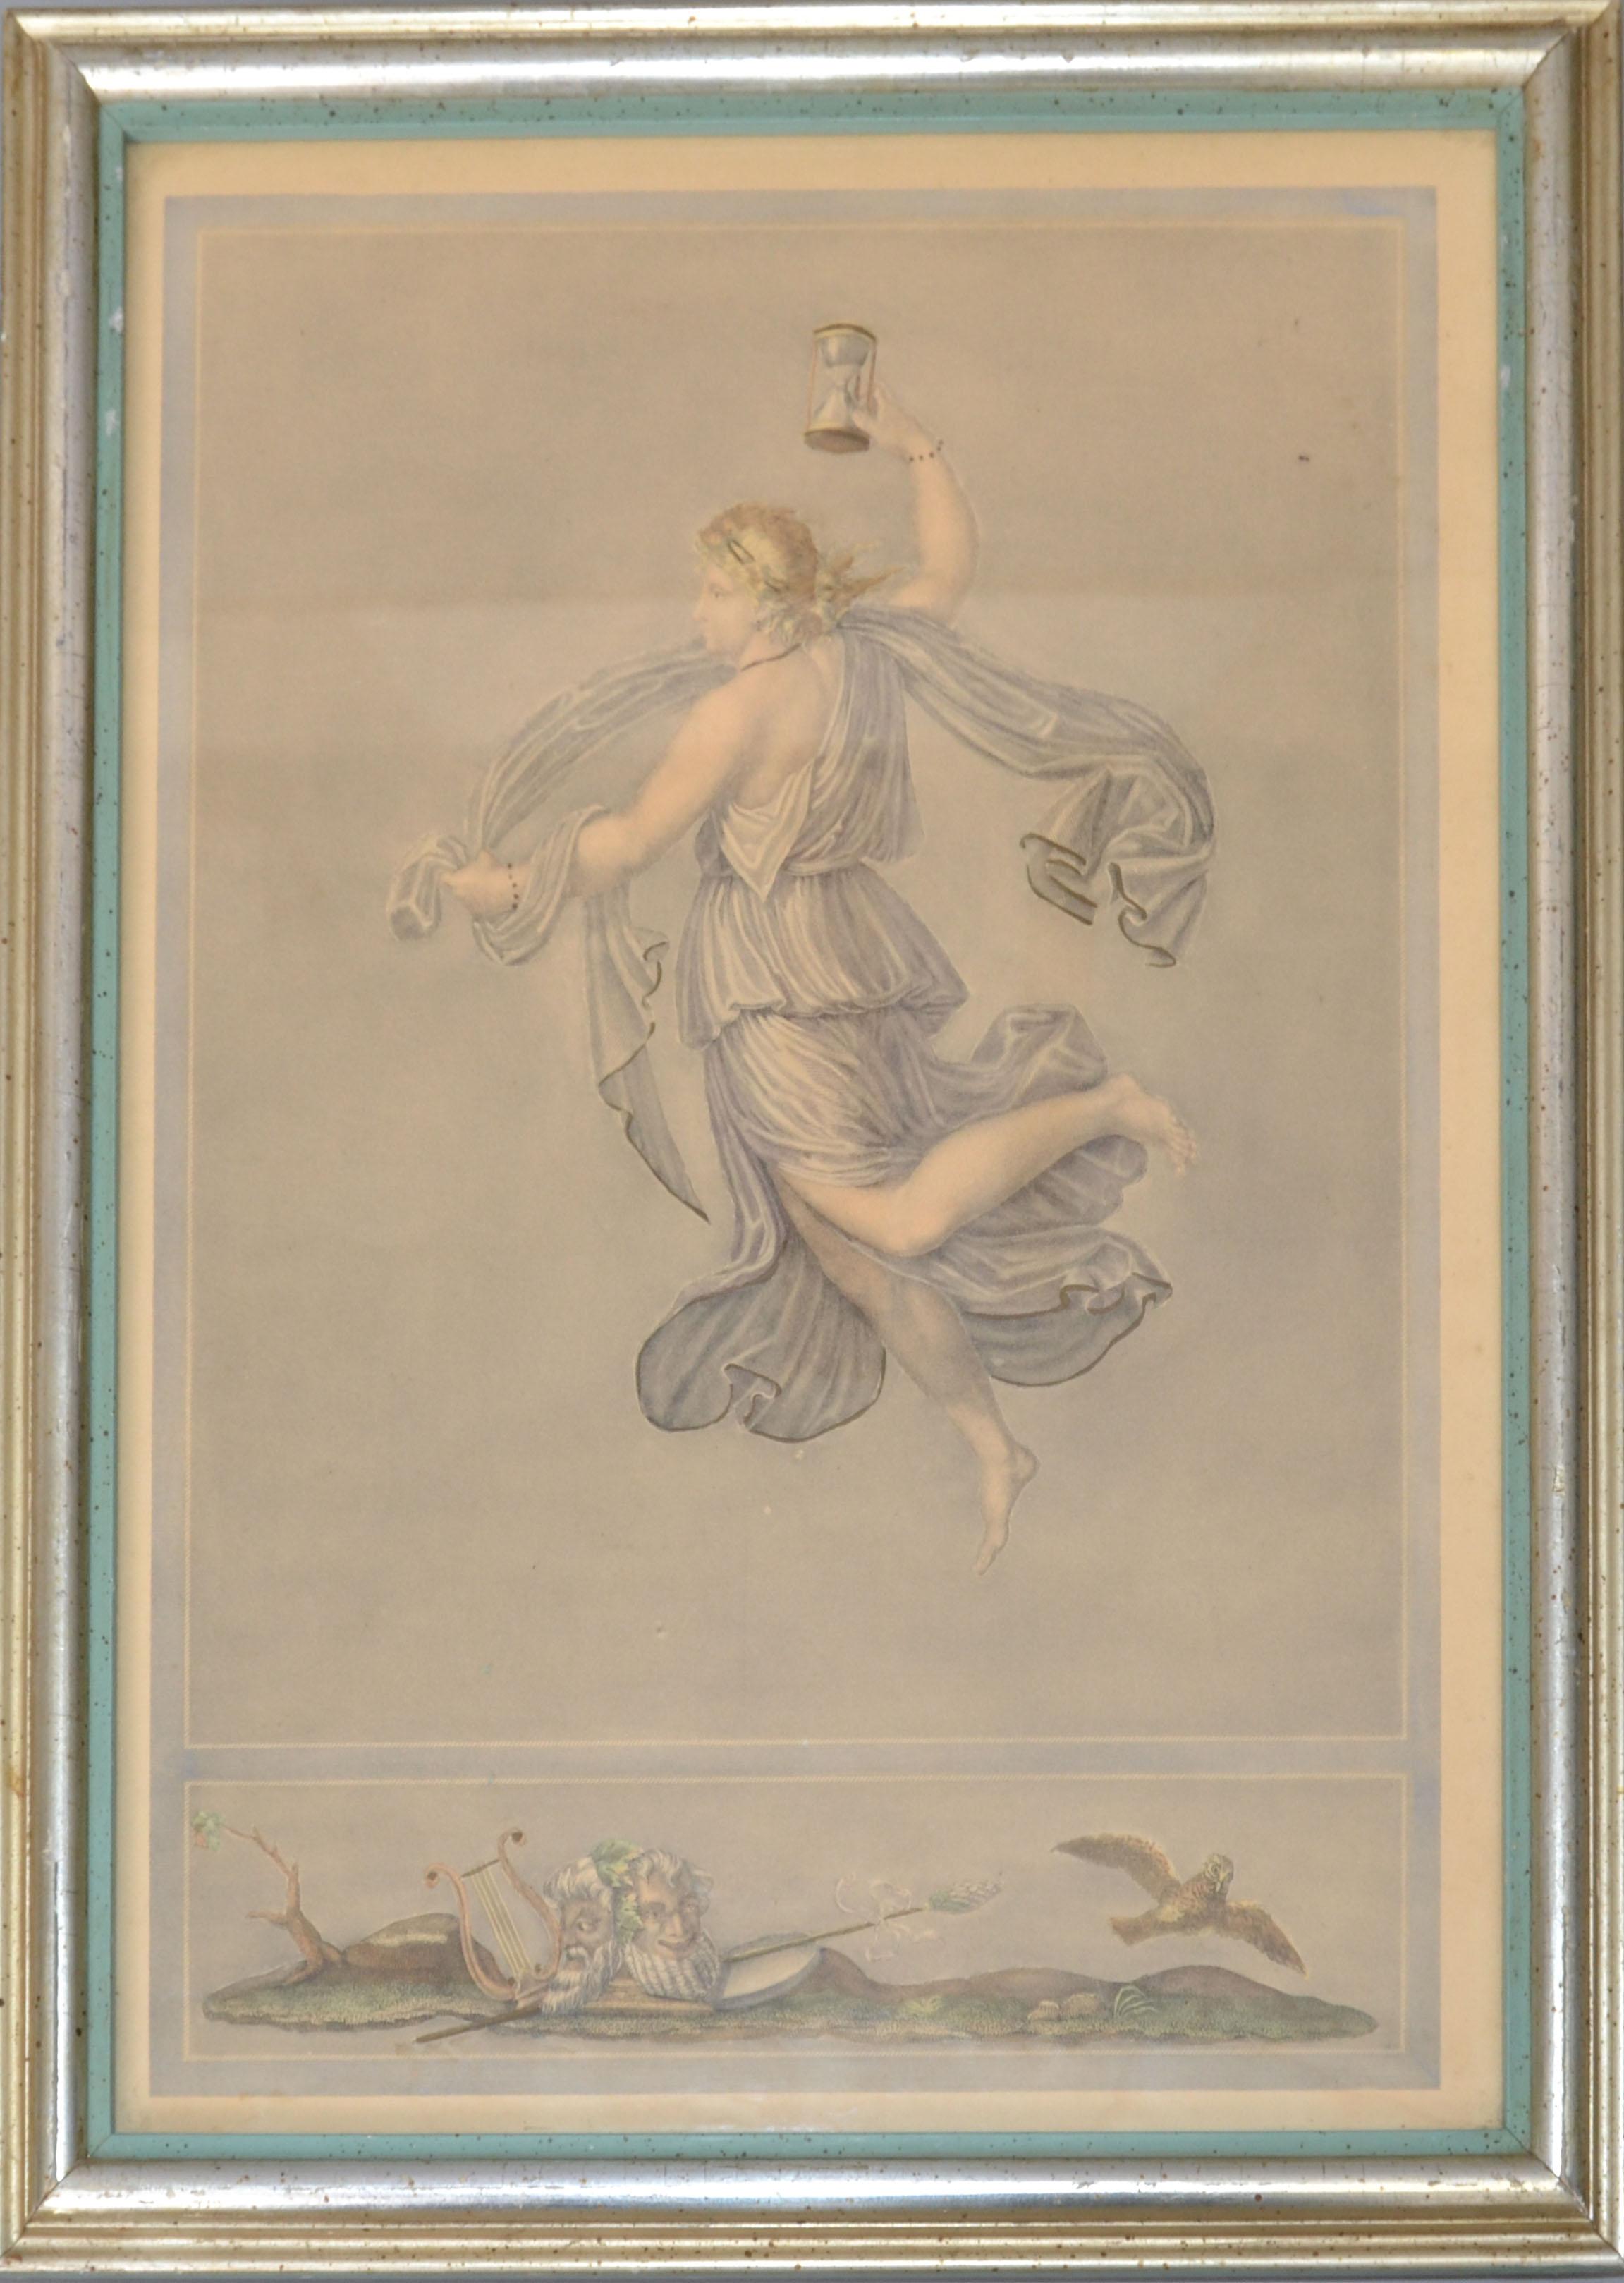 Gravure sur acier encadrée de 1890 Scène gréco-romaine horloge à sable par Bernard Picture Co. New York, New York.
Marqué Borghese au revers.